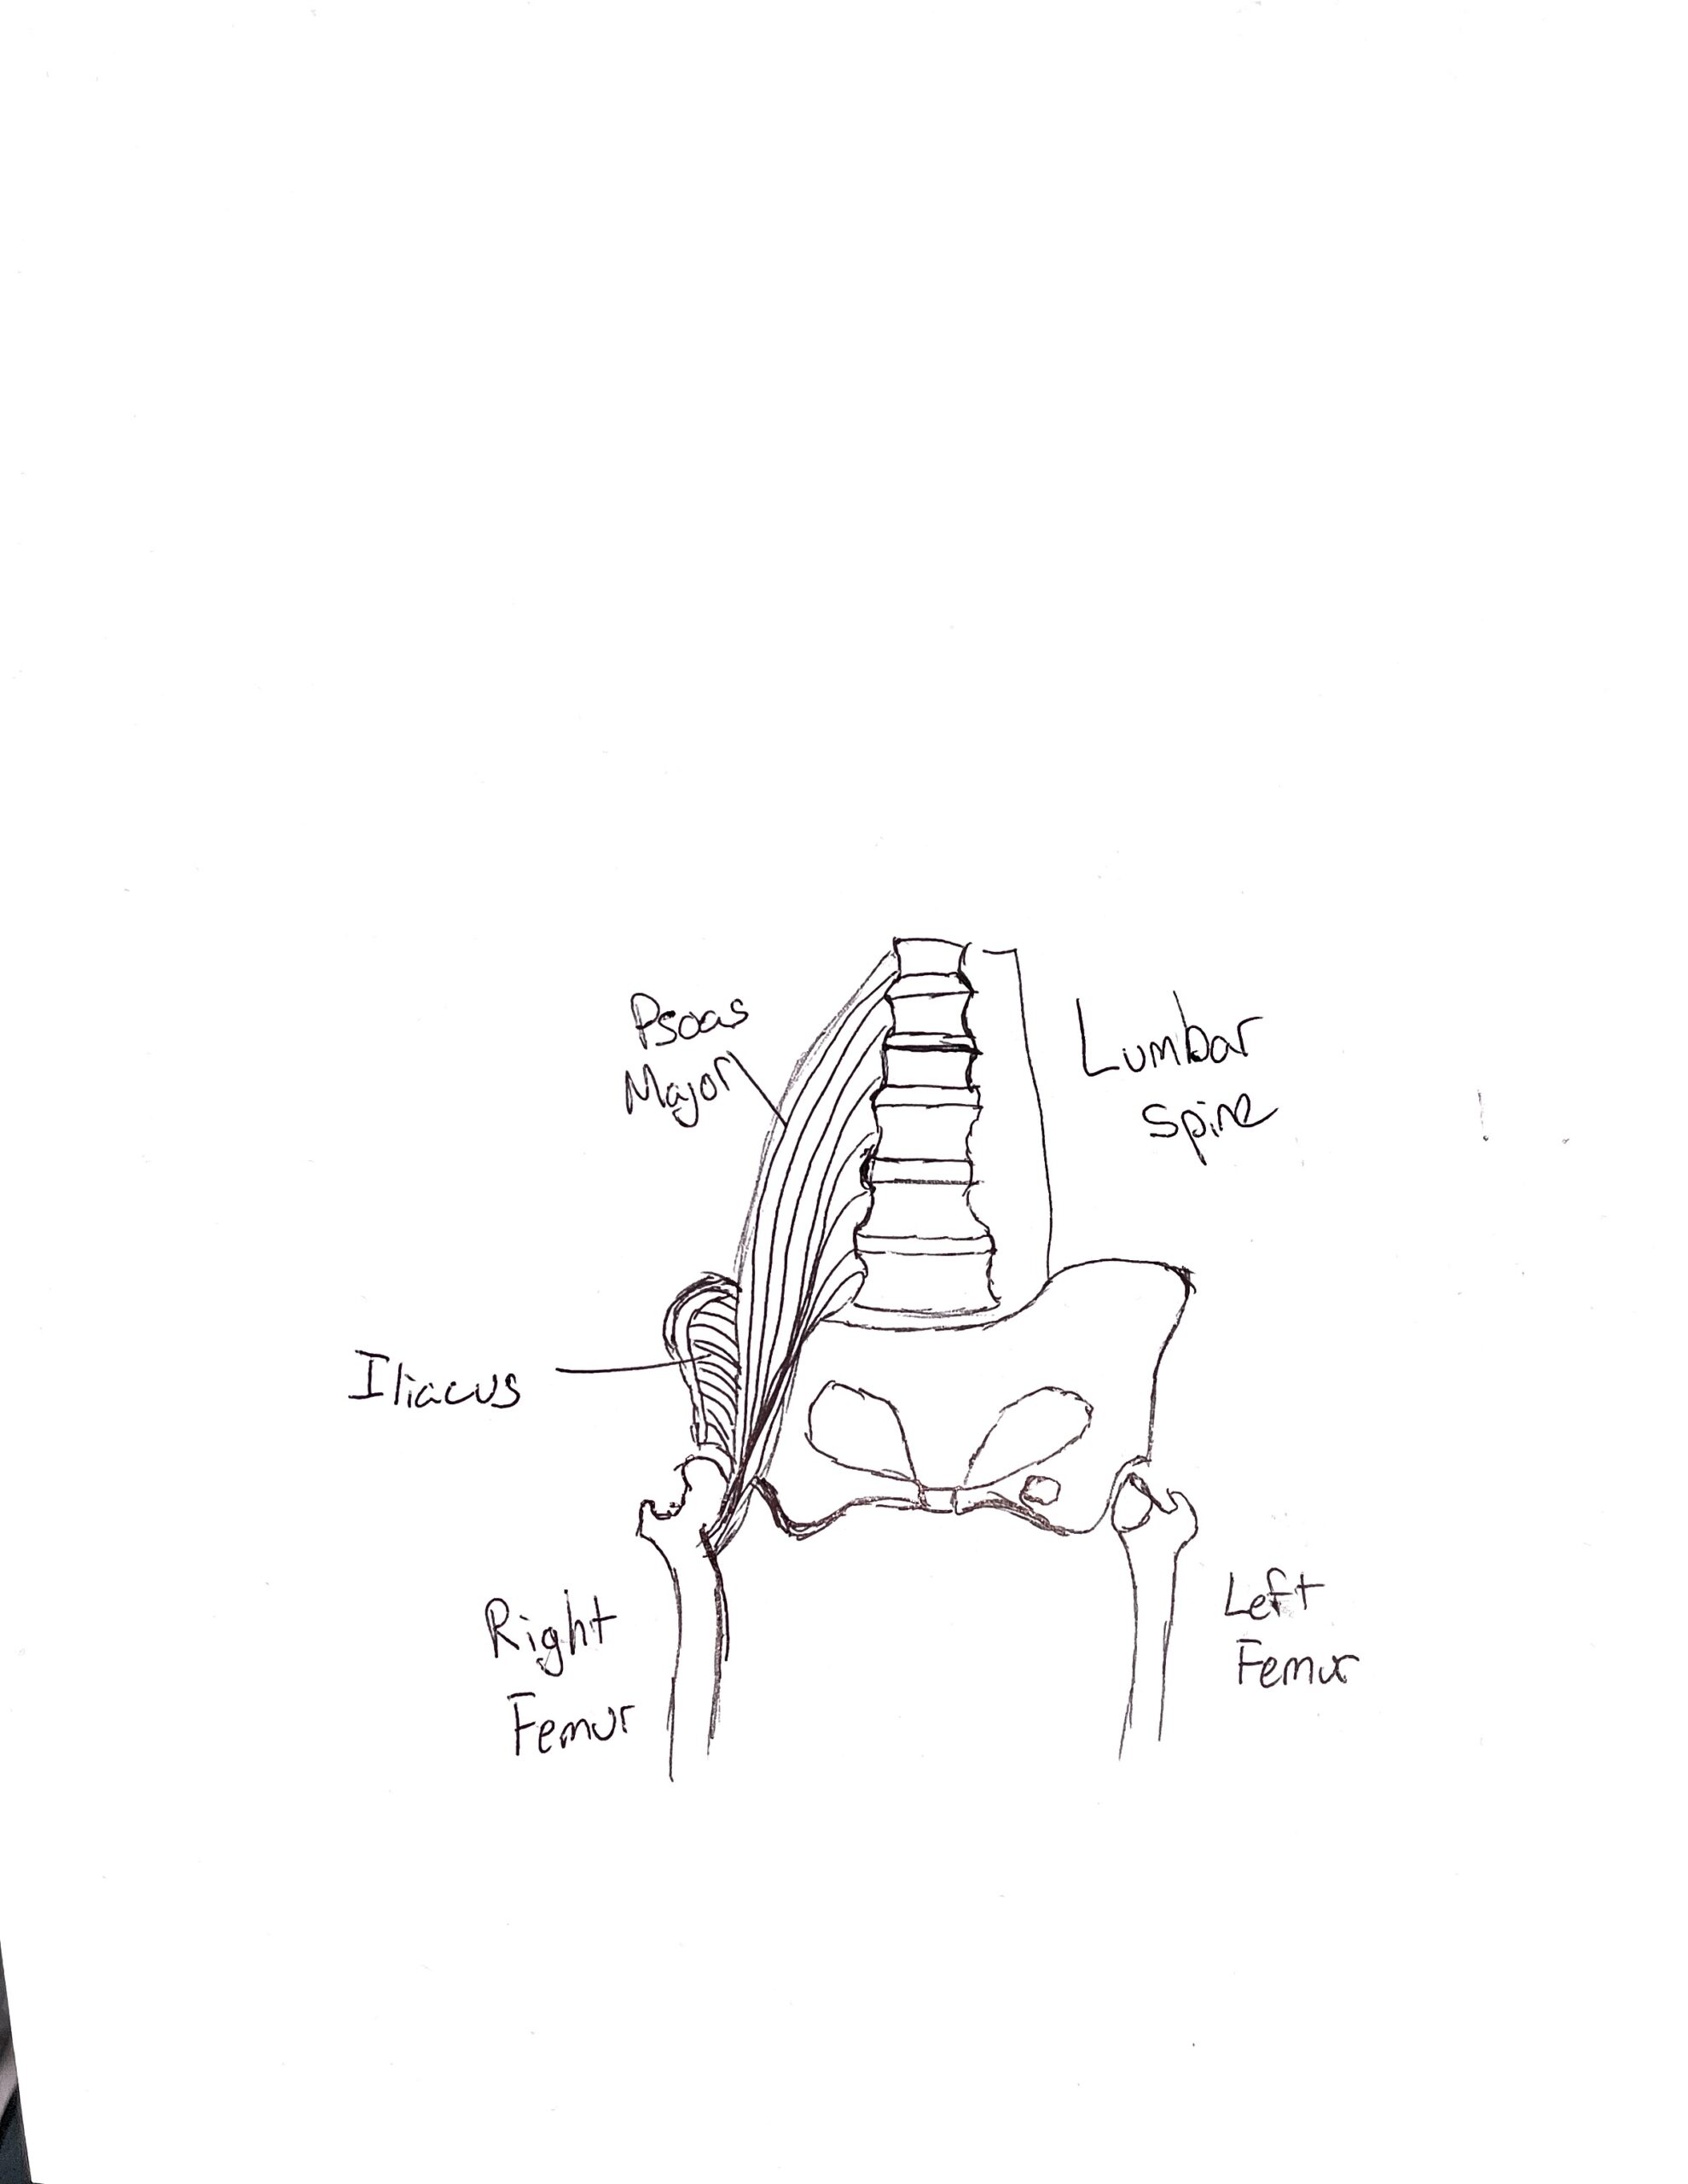 Psoas Major, the Femur, and Posture